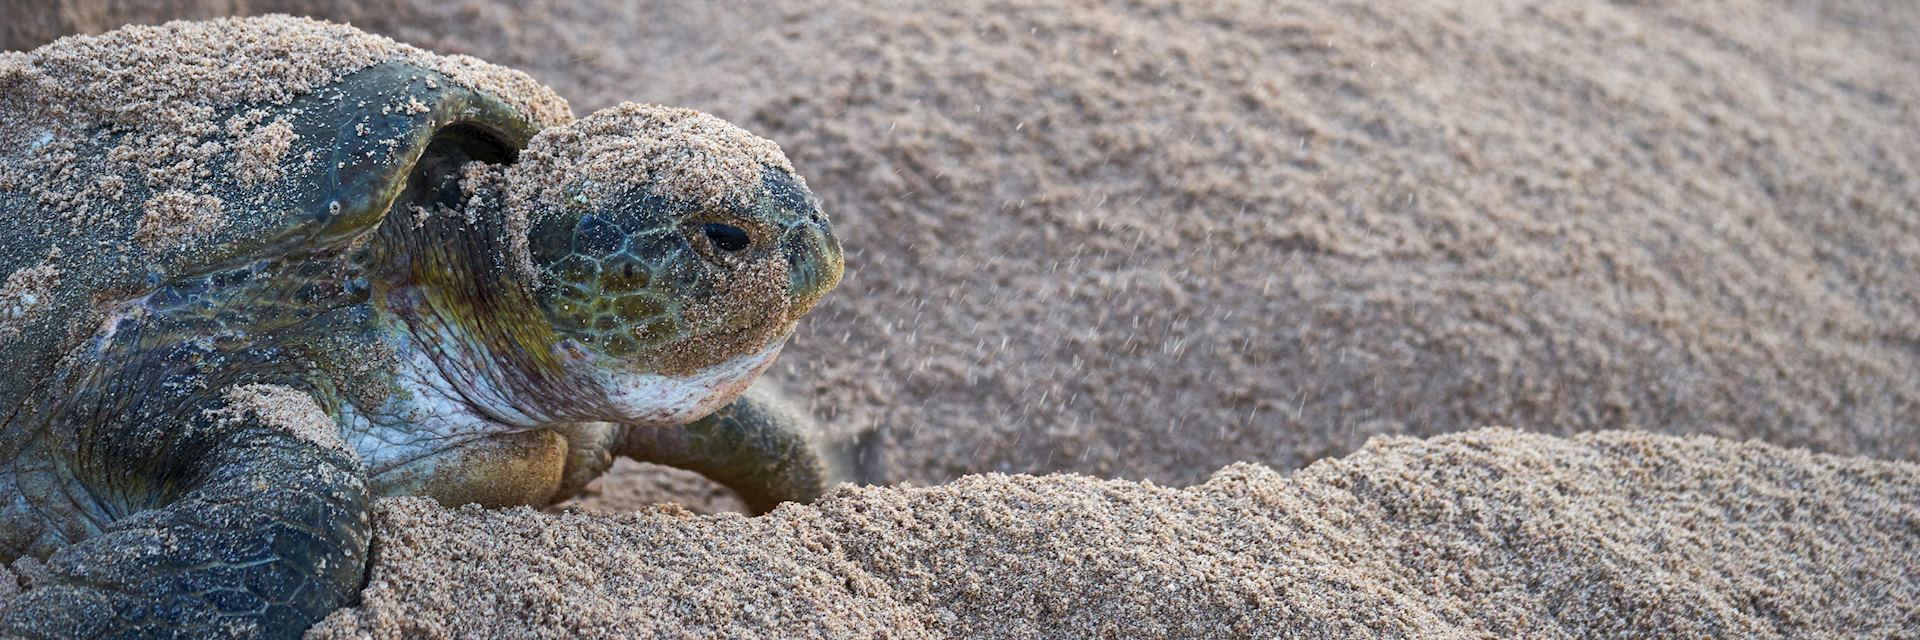 Green turtle, Oman